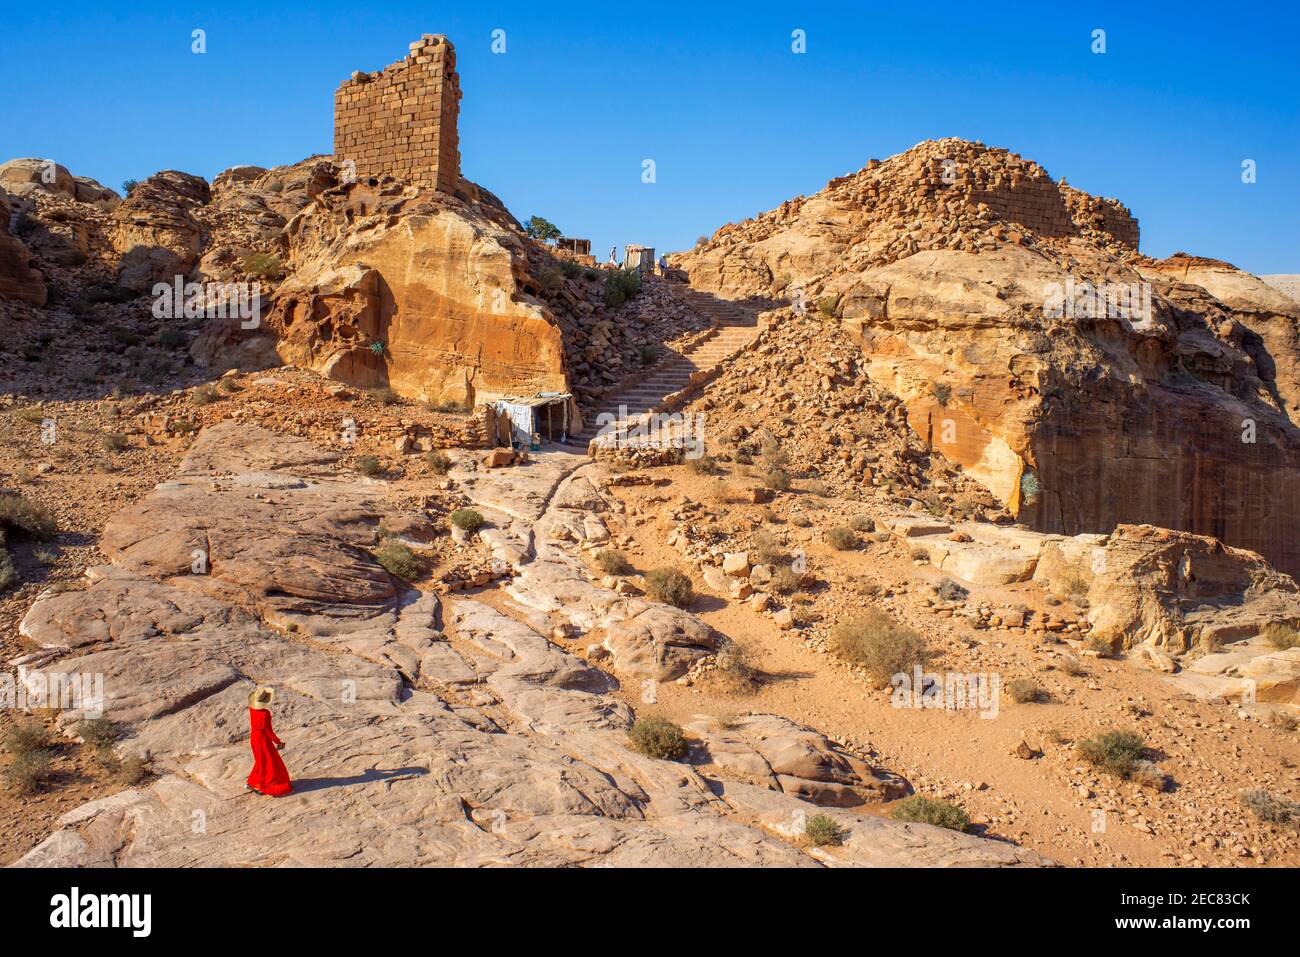 La passeggiata giù al luogo alto del sacrificio, Jabal al-Khubtha, altare sacrificale, antico luogo di culto su Petra, Giordania. Foto Stock